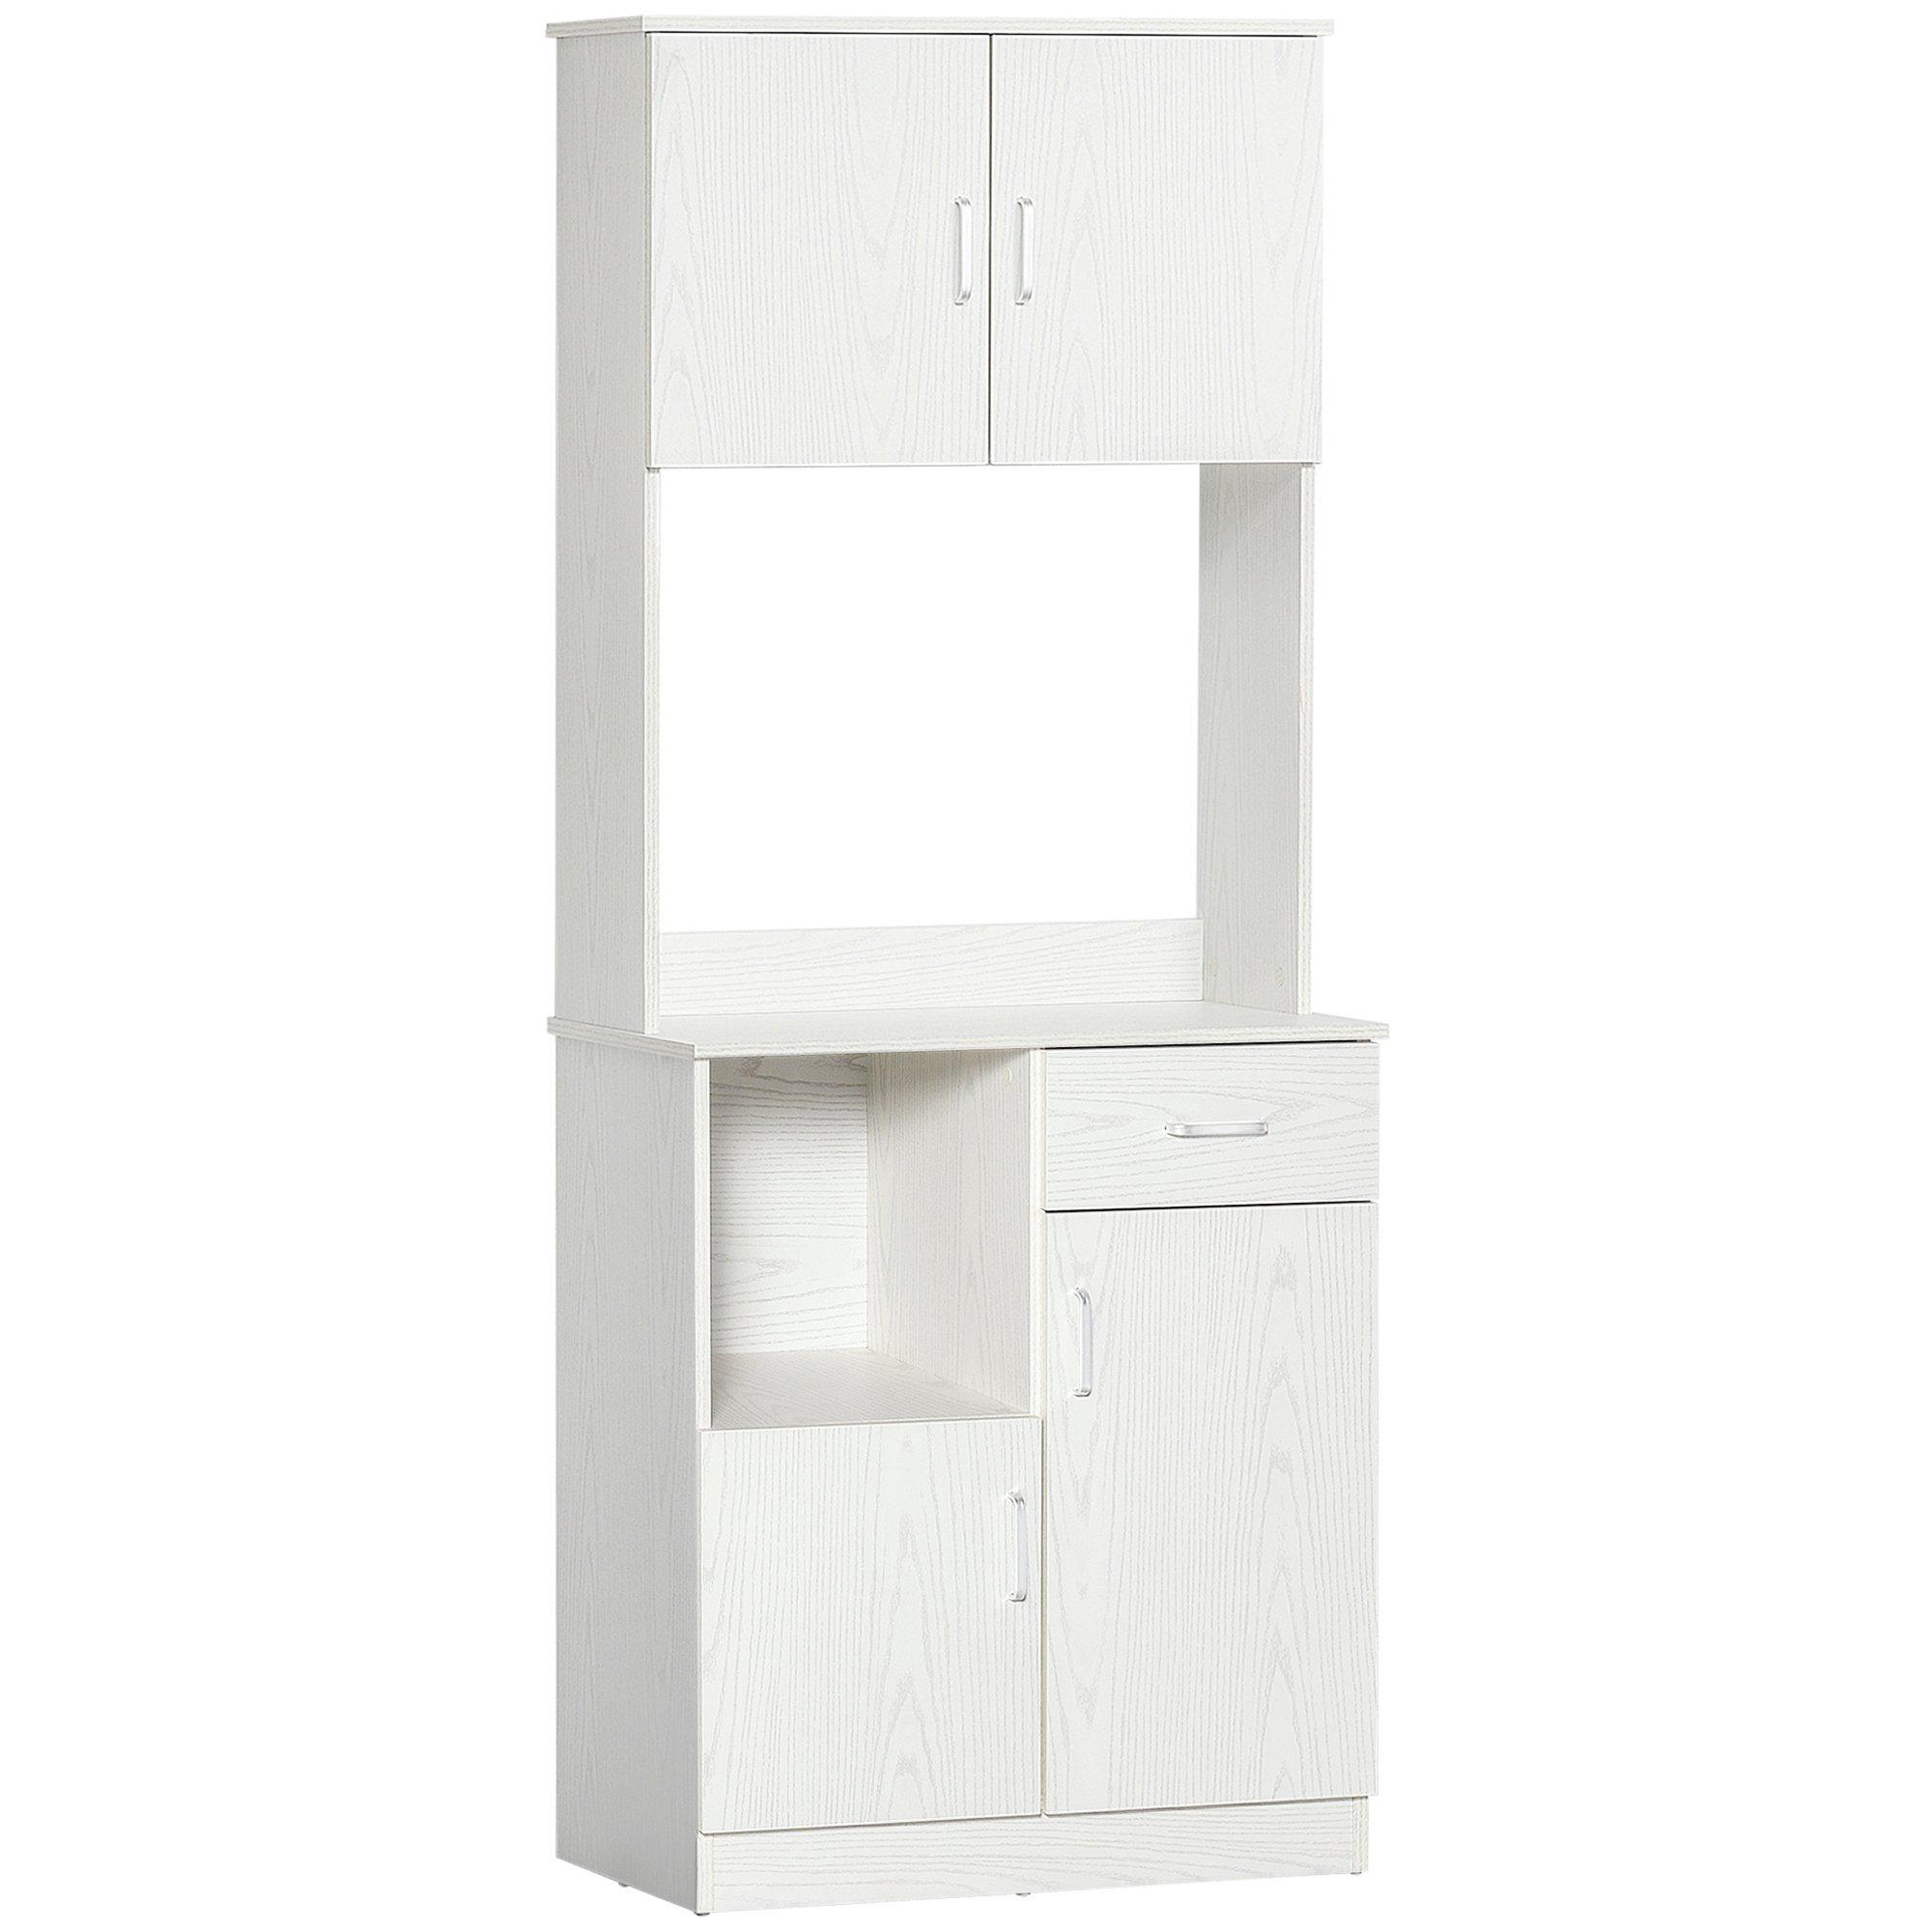 Modern Kitchen Cupboard Storage Cabinet Organiser Microwave Shelf